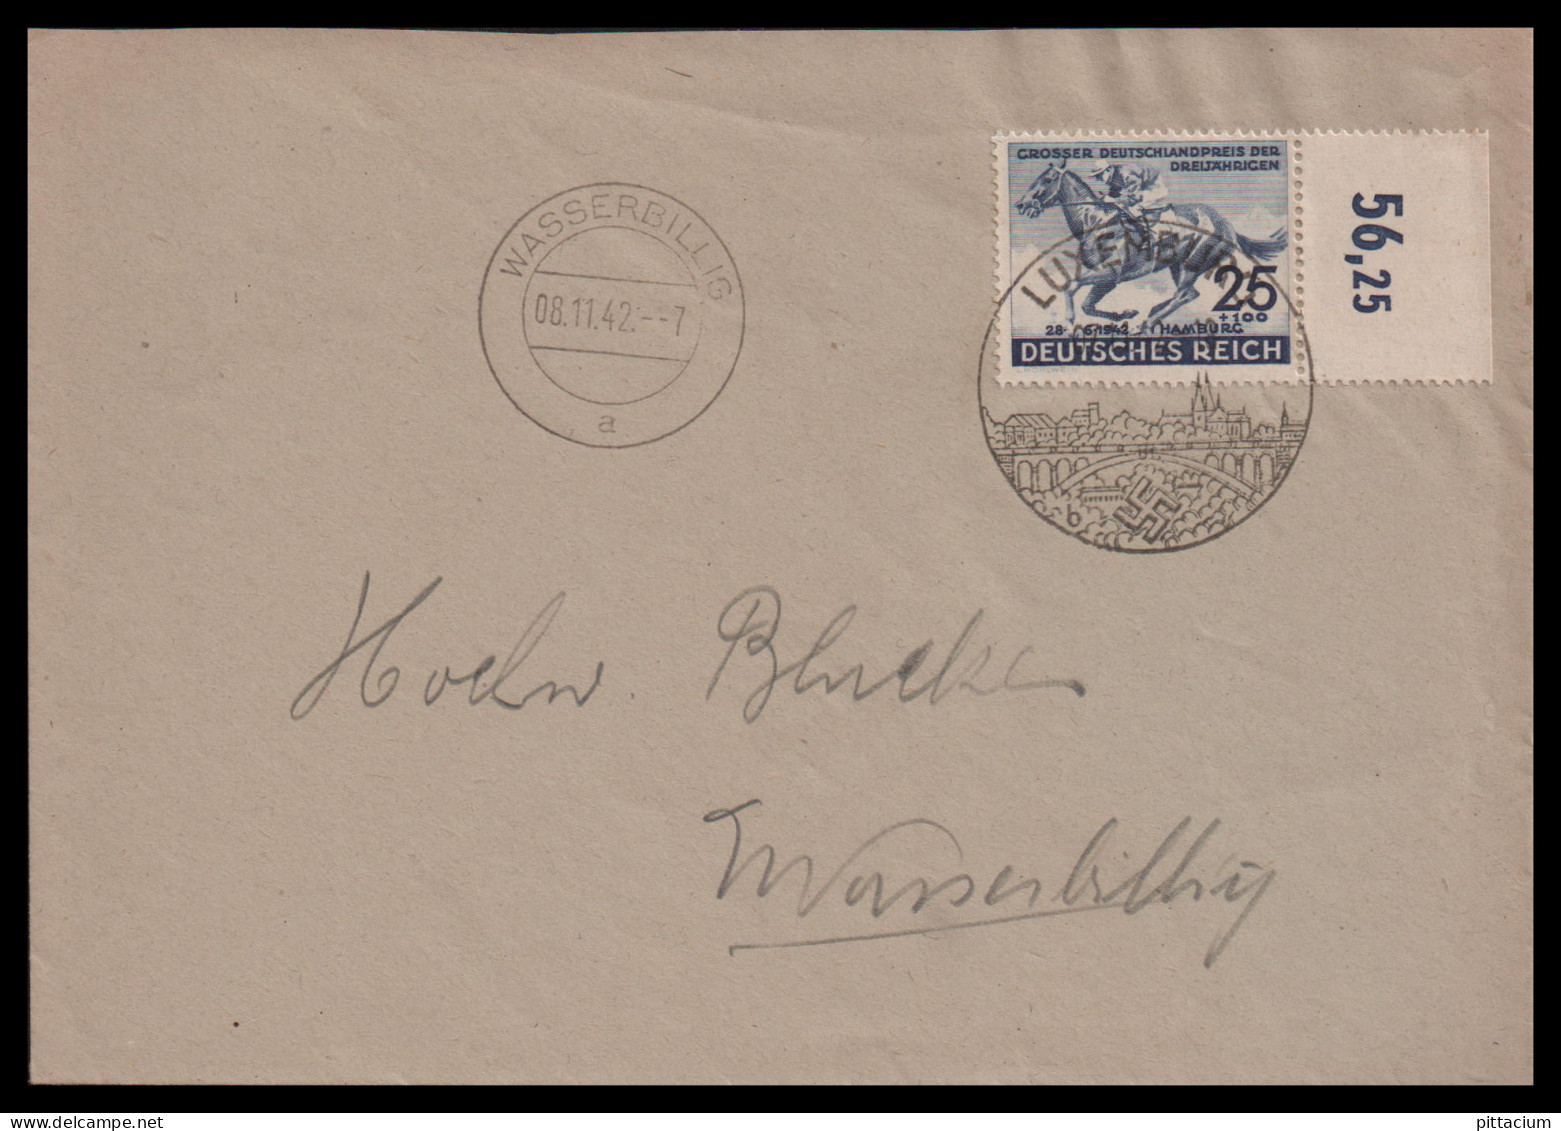 Luxemburg 1942: Brief  | Pferde, Deutsches Derby, Besatzung | Luxemburg, Wasserbillig - 1940-1944 German Occupation